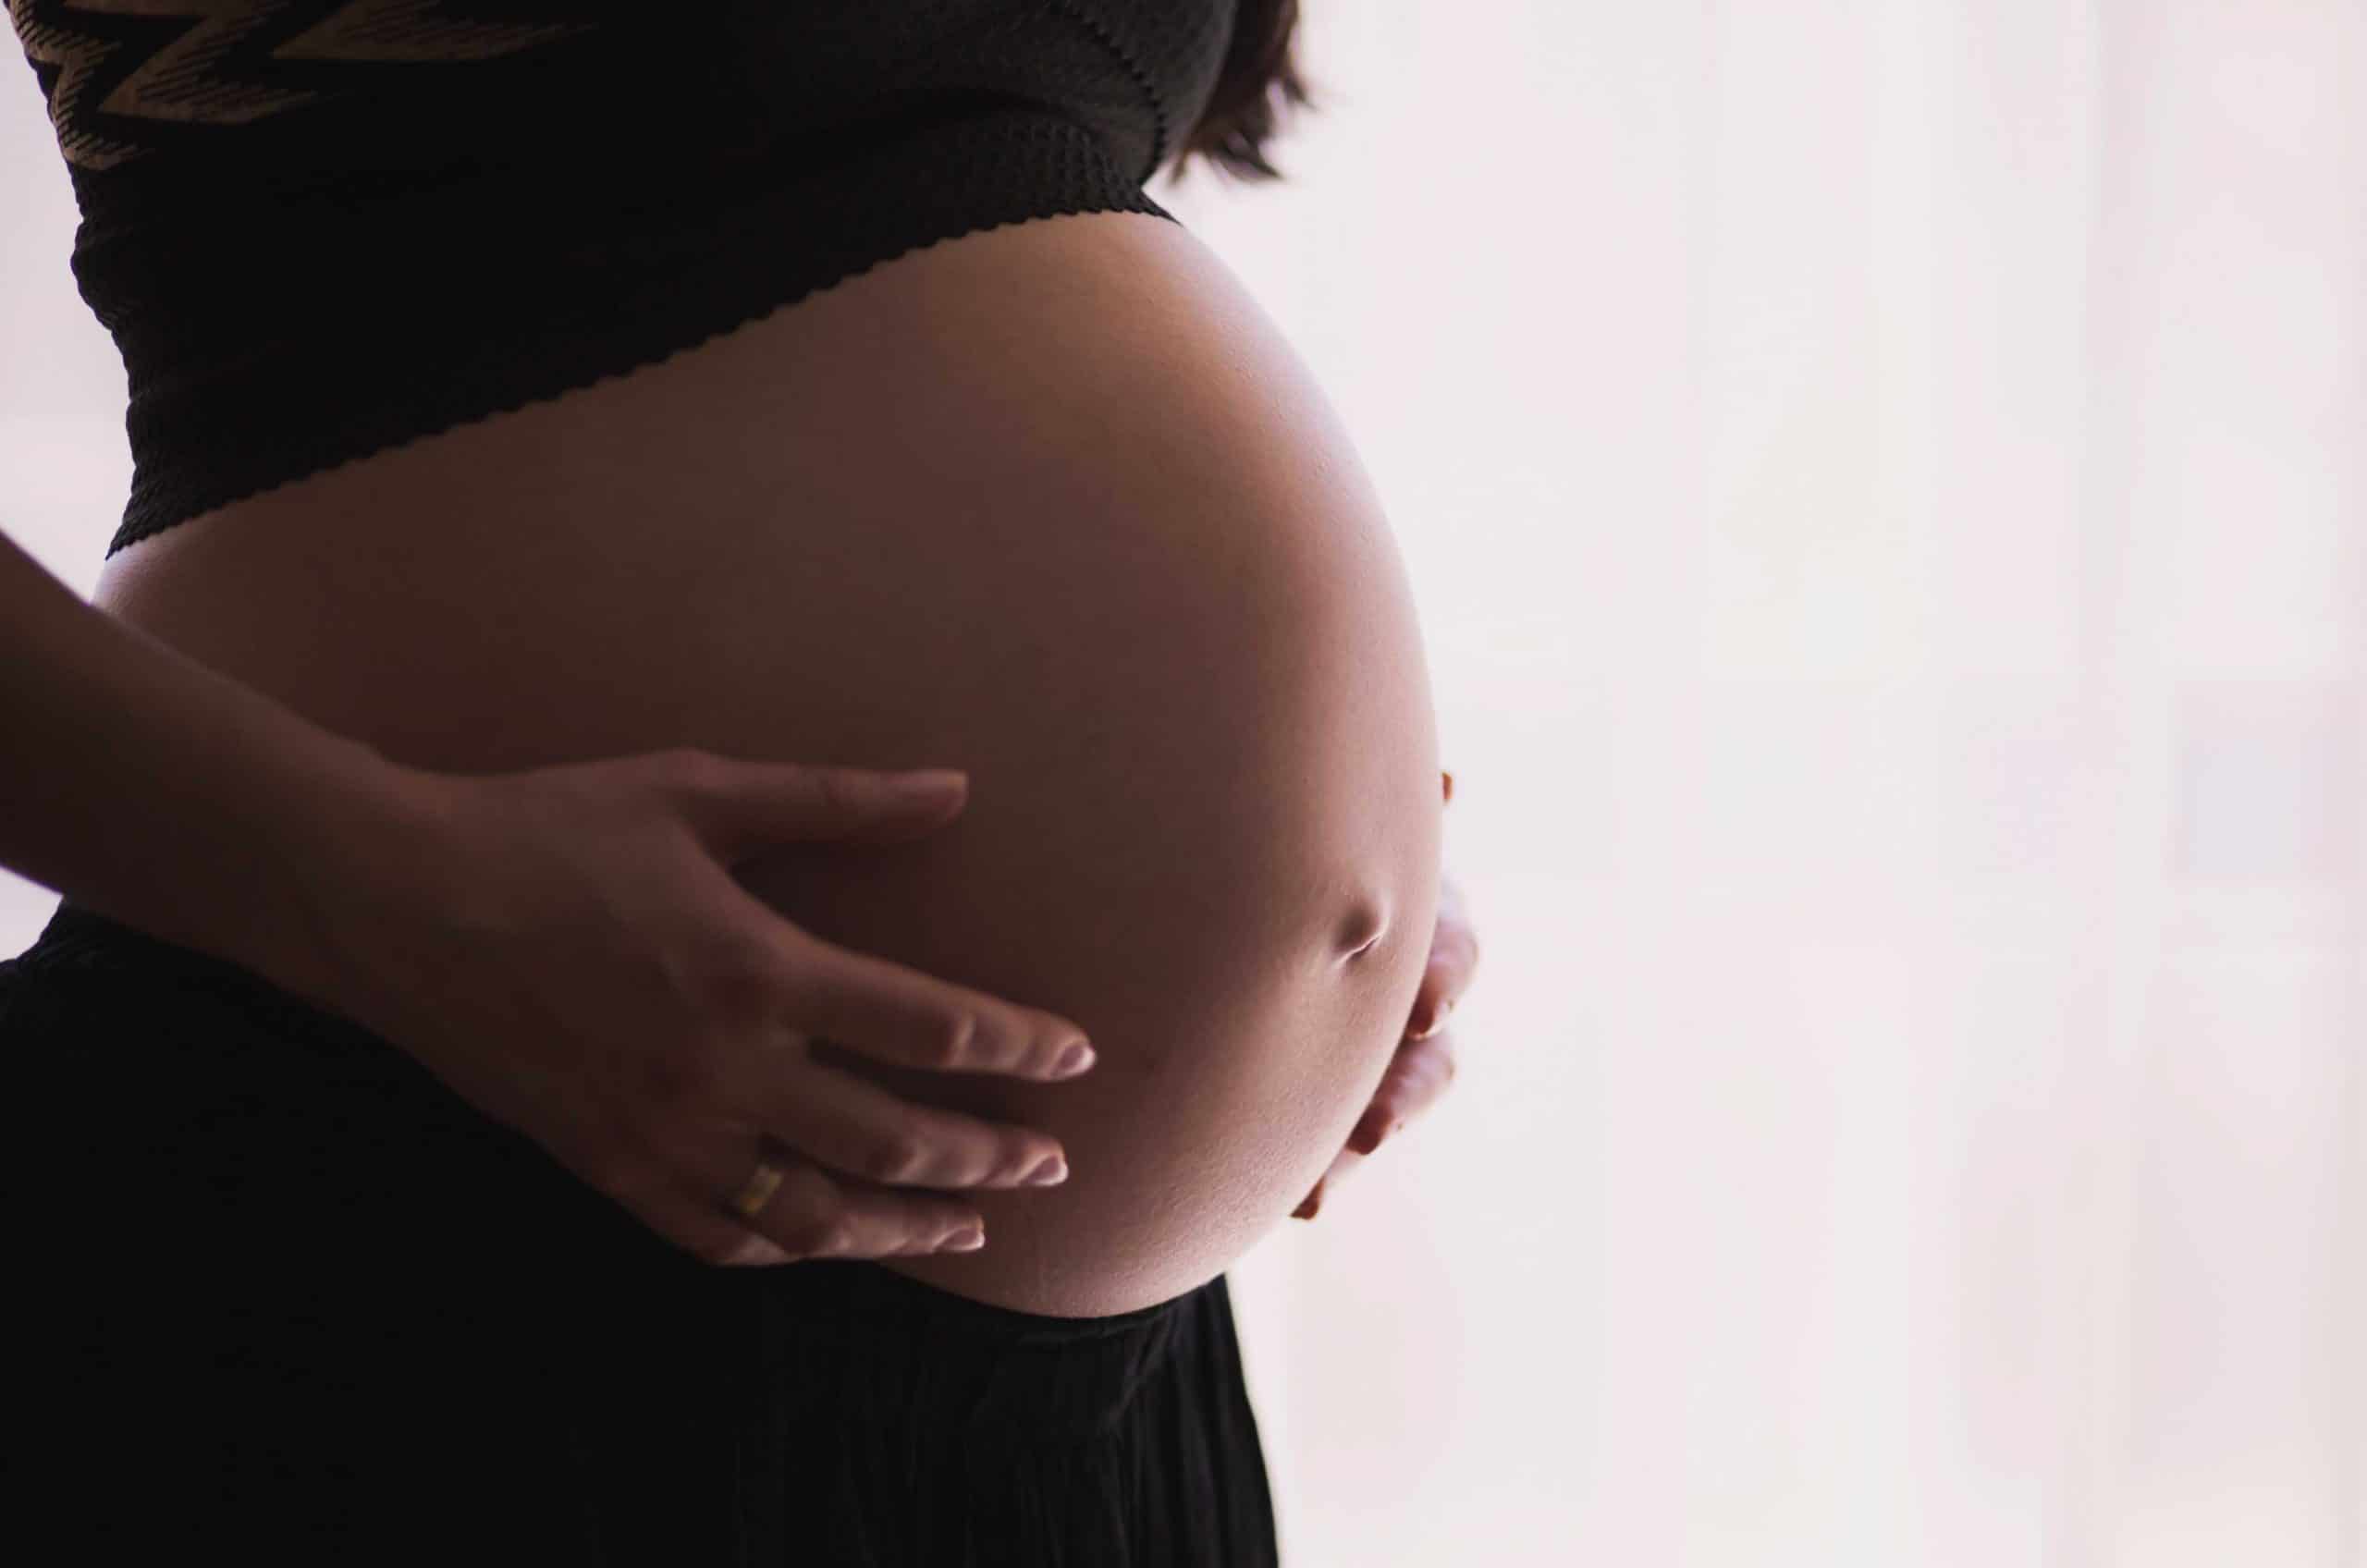 Κάθε τύπος διατροφικής διαταραχής επηρεάζει την εγκυμοσύνη είτε αρνητικά είτε θετικά.